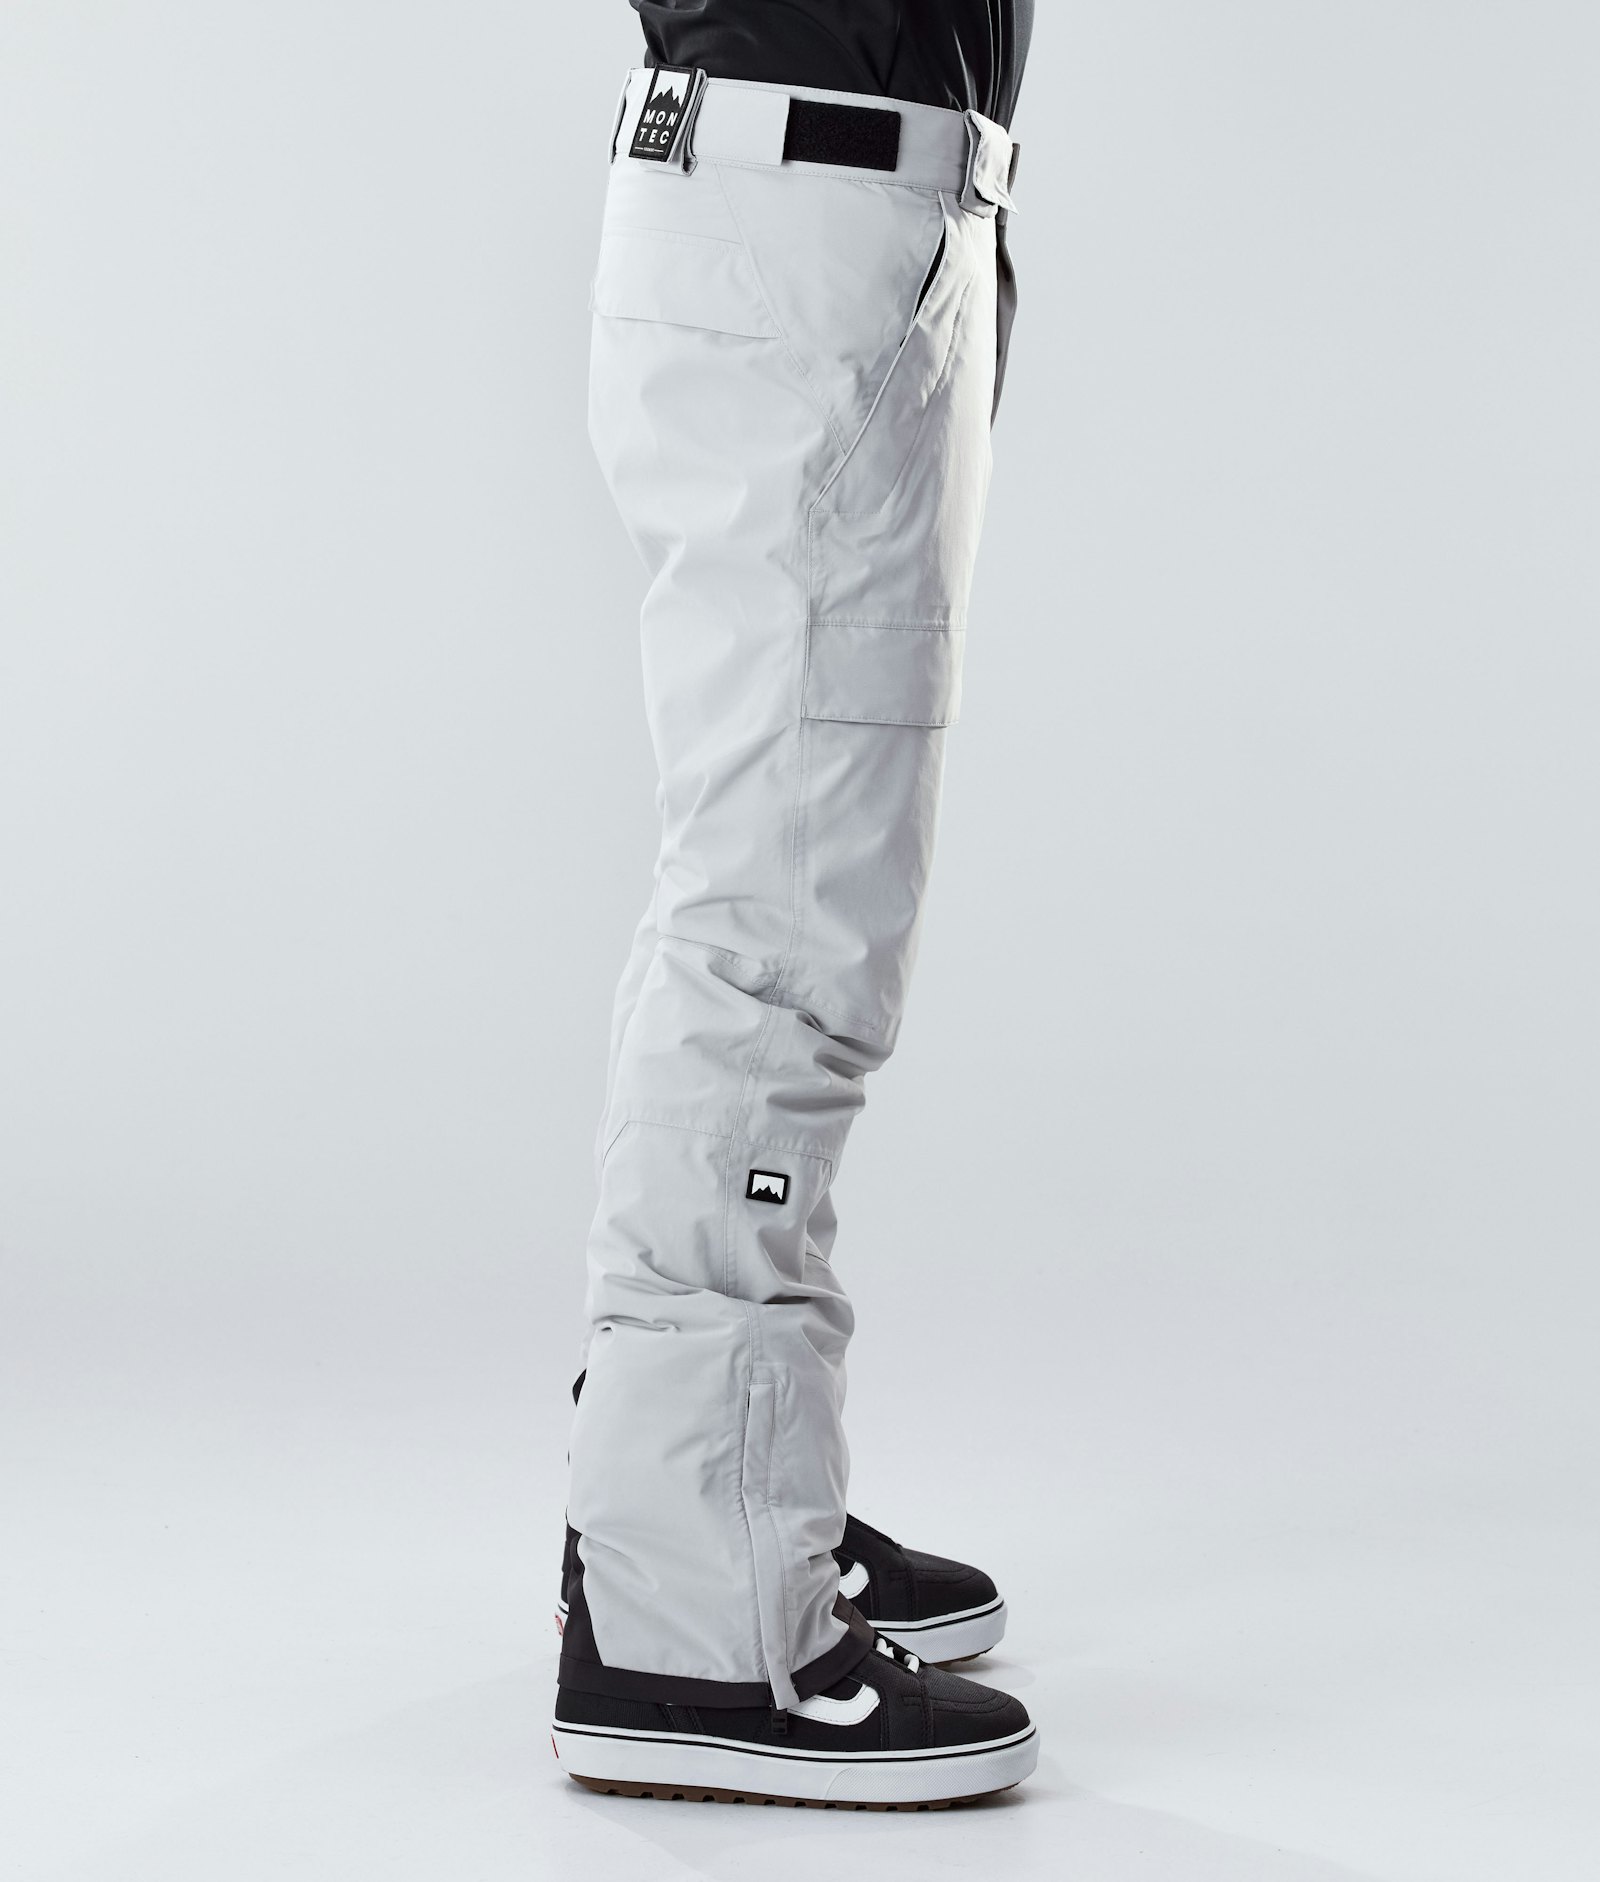 Montec Dune 2020 Pantalon de Snowboard Homme Light Grey